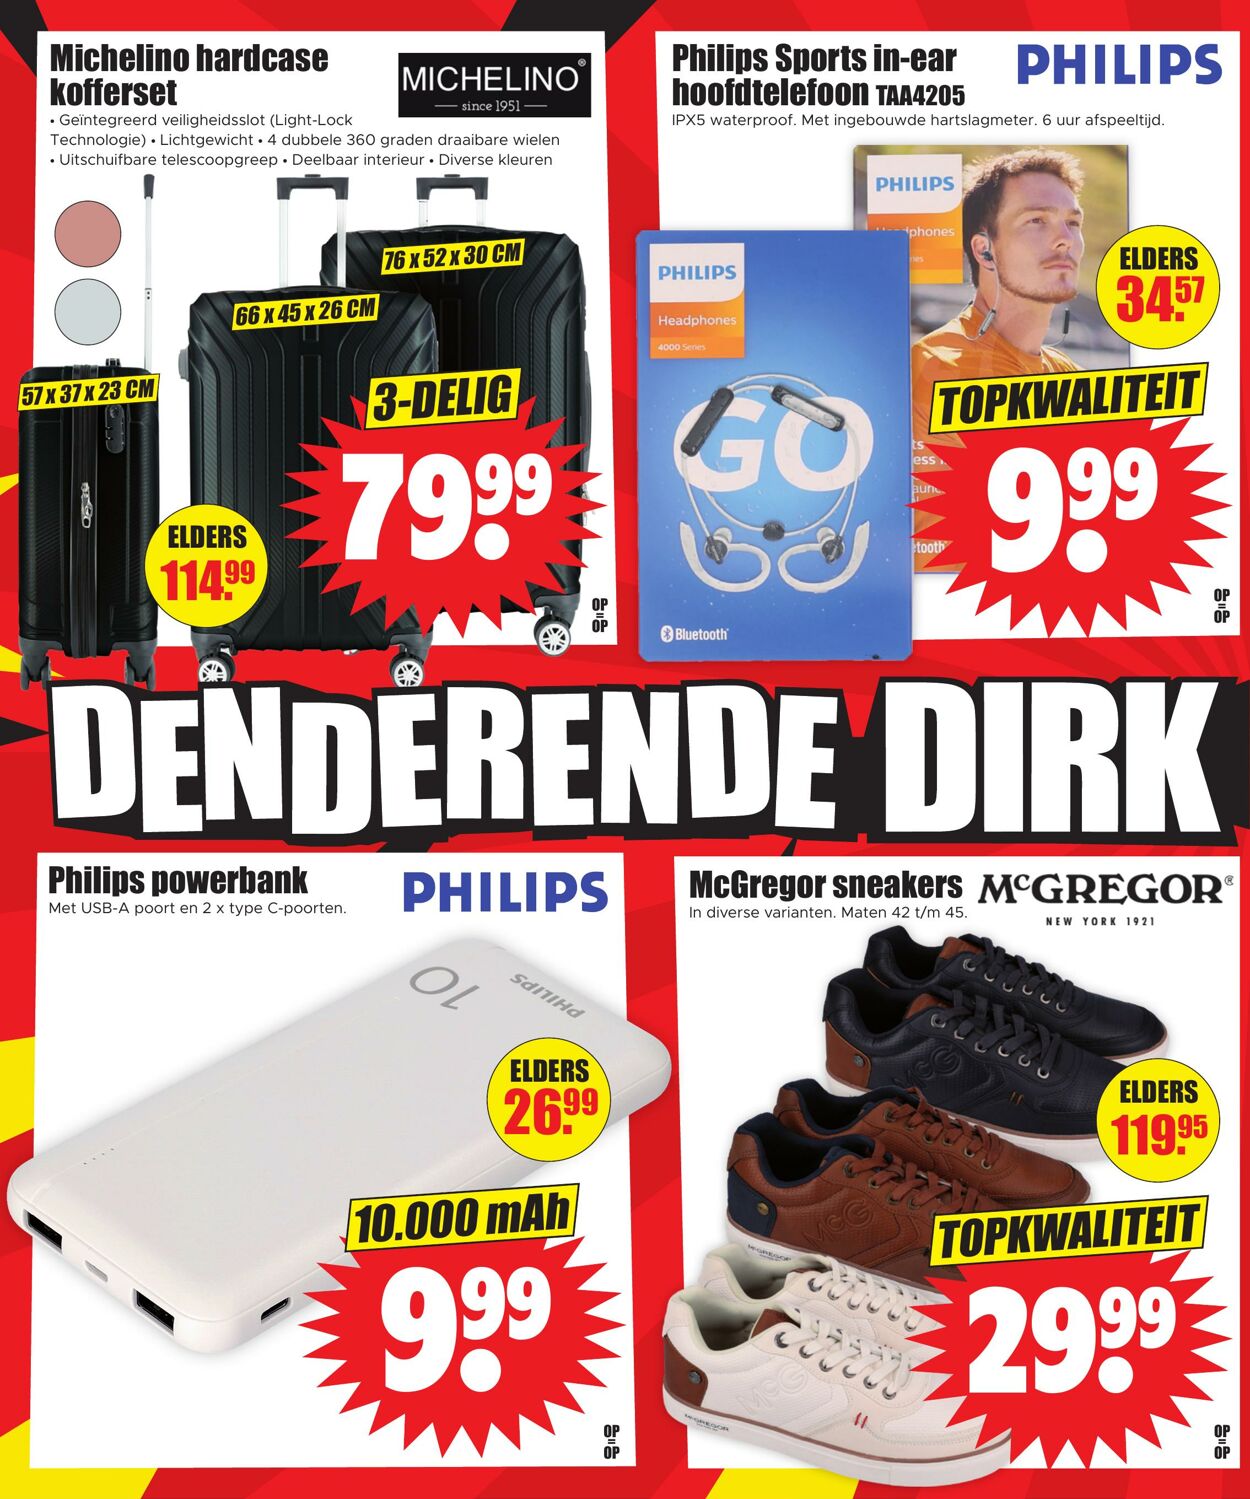 Folder Dirk 24.05.2023 - 30.05.2023